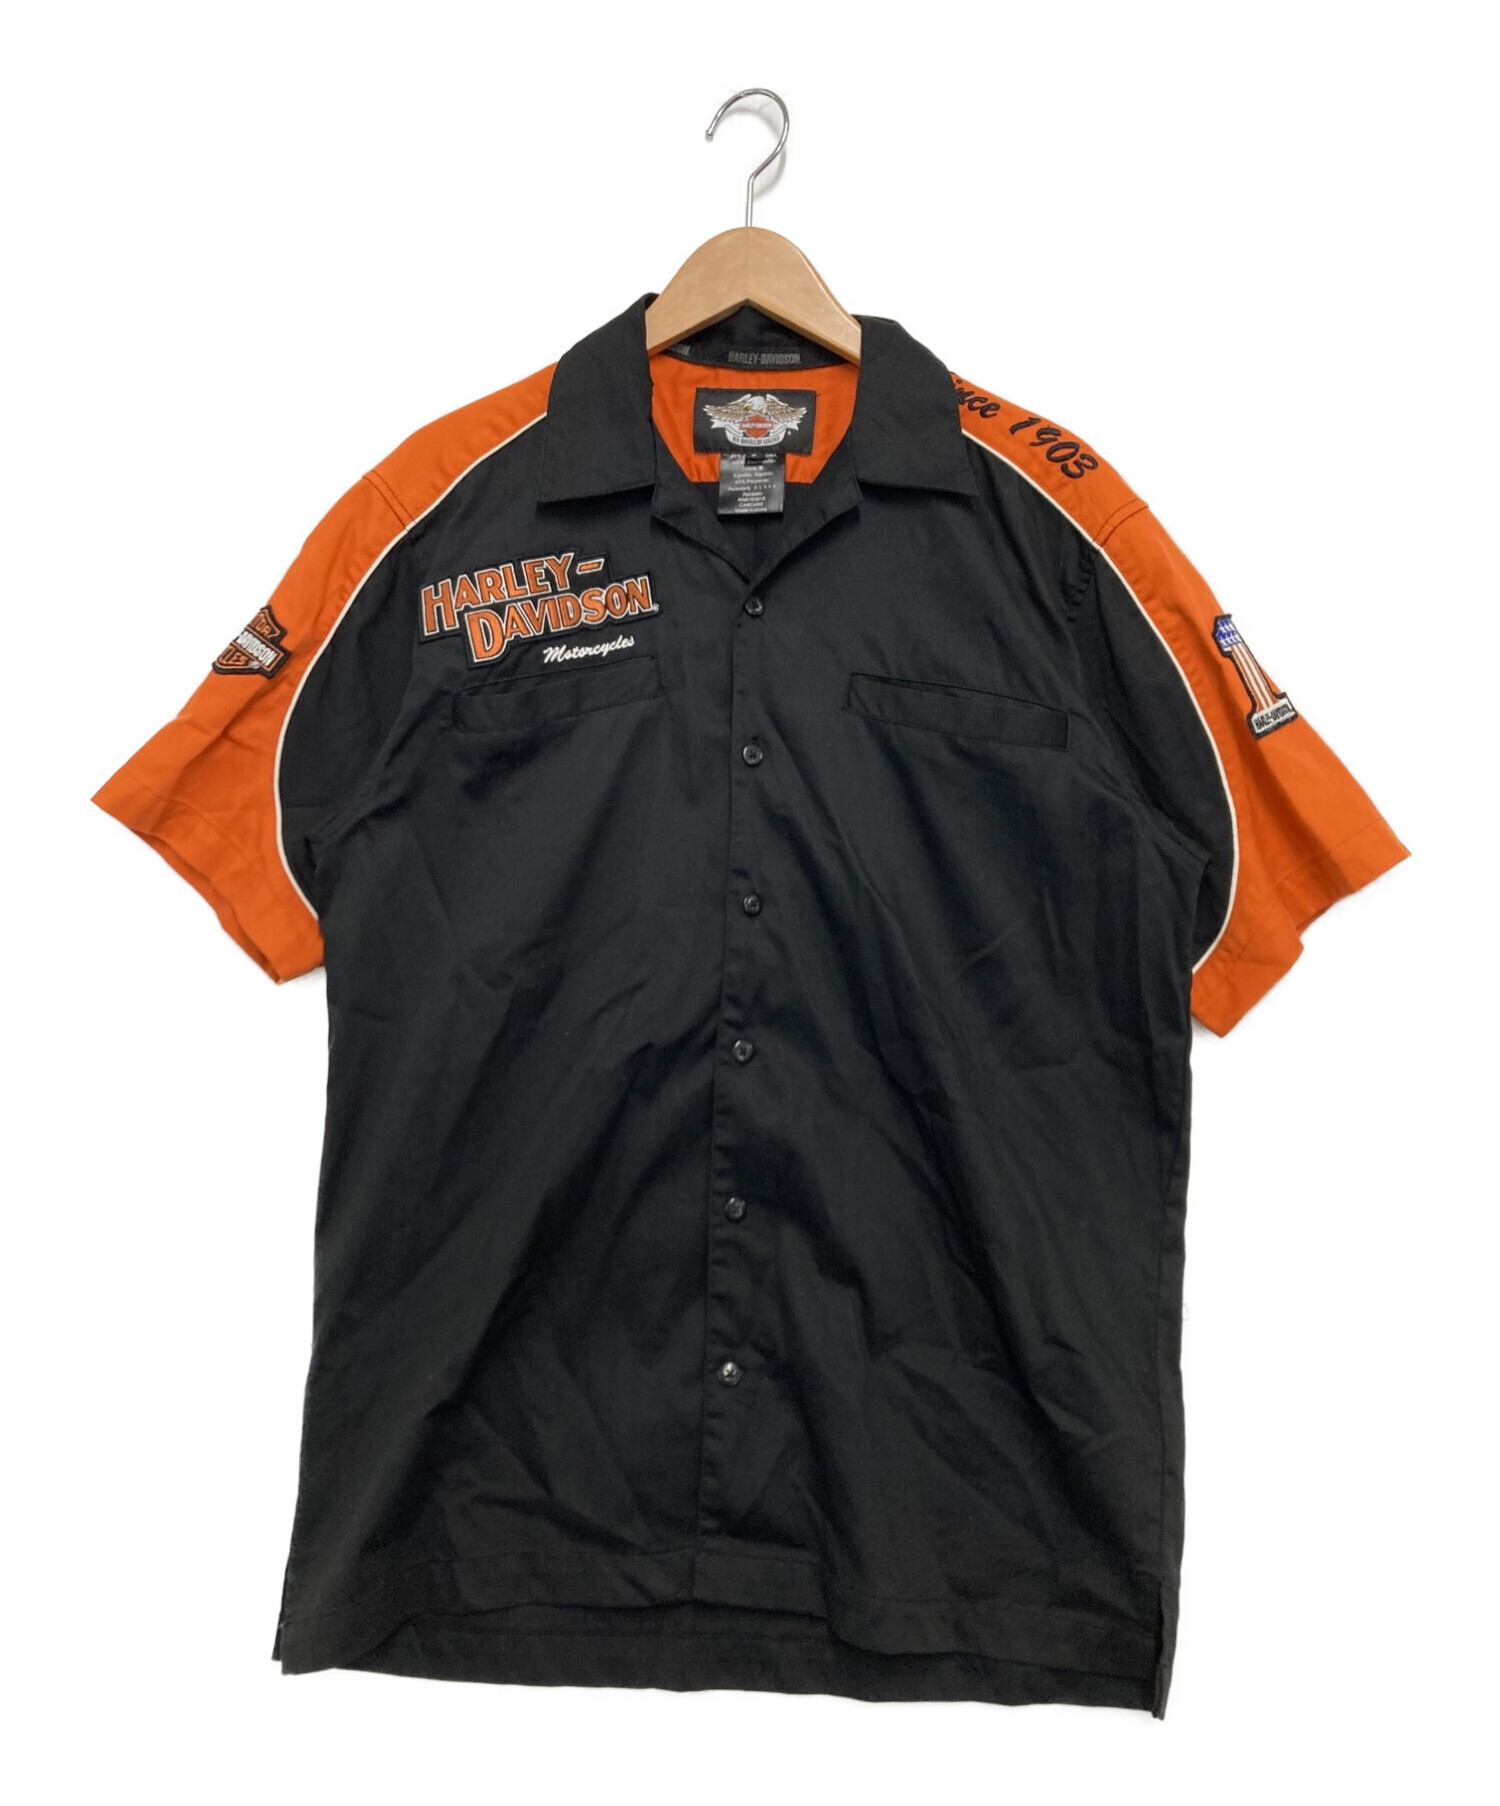 HARLEY-DAVIDSON (ハーレーダビットソン) 半袖シャツ ブラック×オレンジ サイズ:S